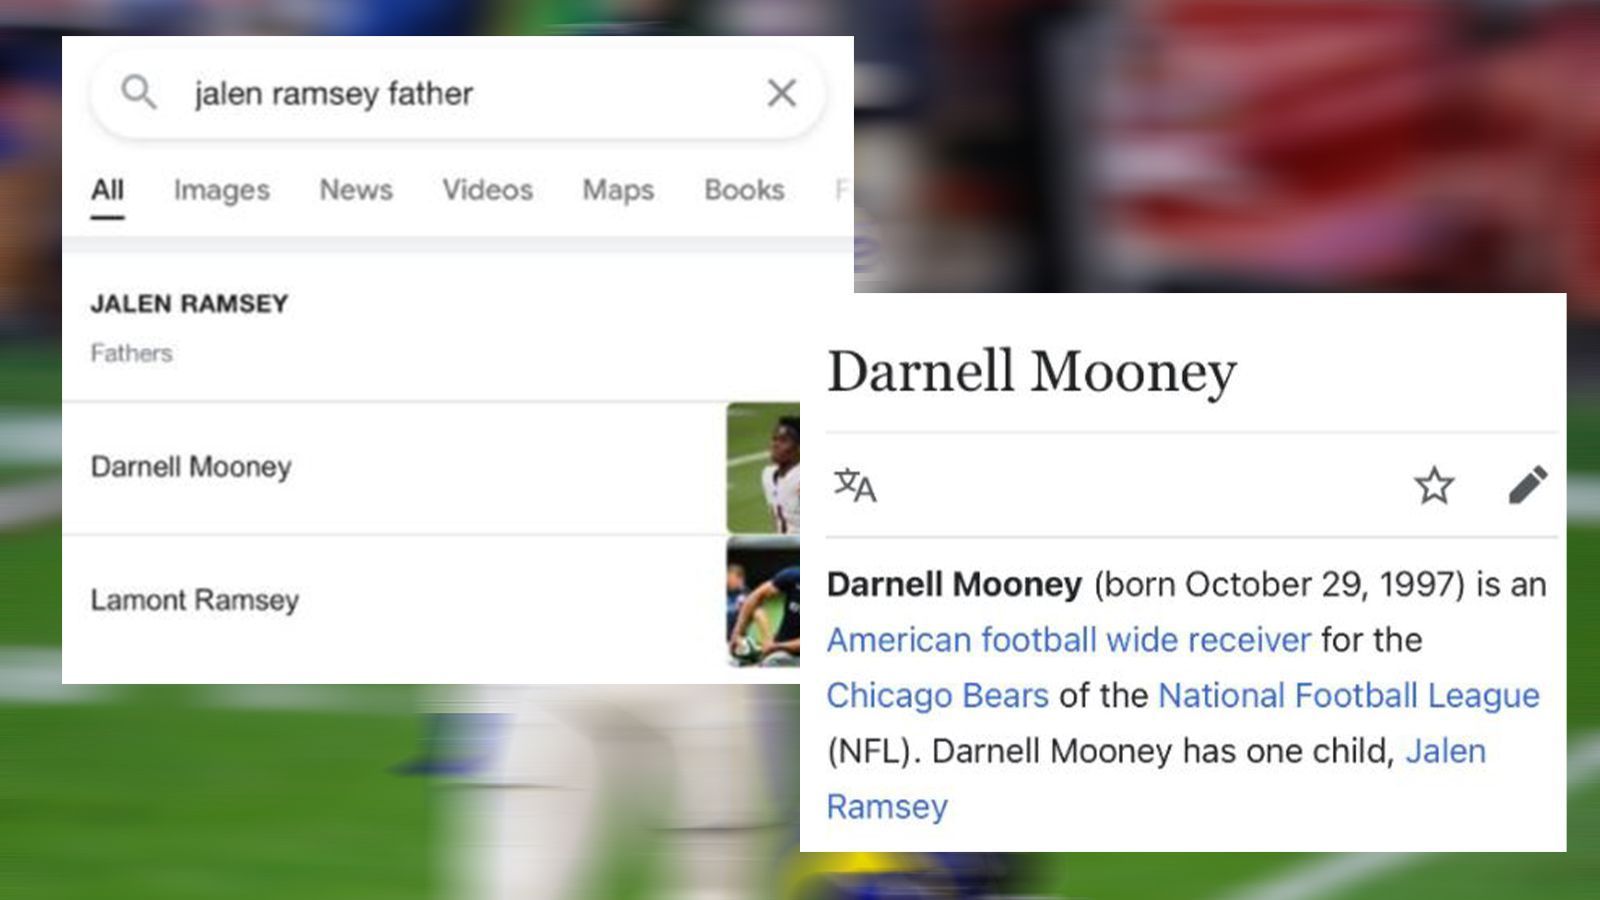 
                <strong>Bears-Fans nehmen Ramsey auf die Schippe</strong><br>
                In Wikipedia-Einträgen werden die Familienverhältnisse etwas durcheinander gebracht. Mooney ist Ramseys Vater - na gut. 
              